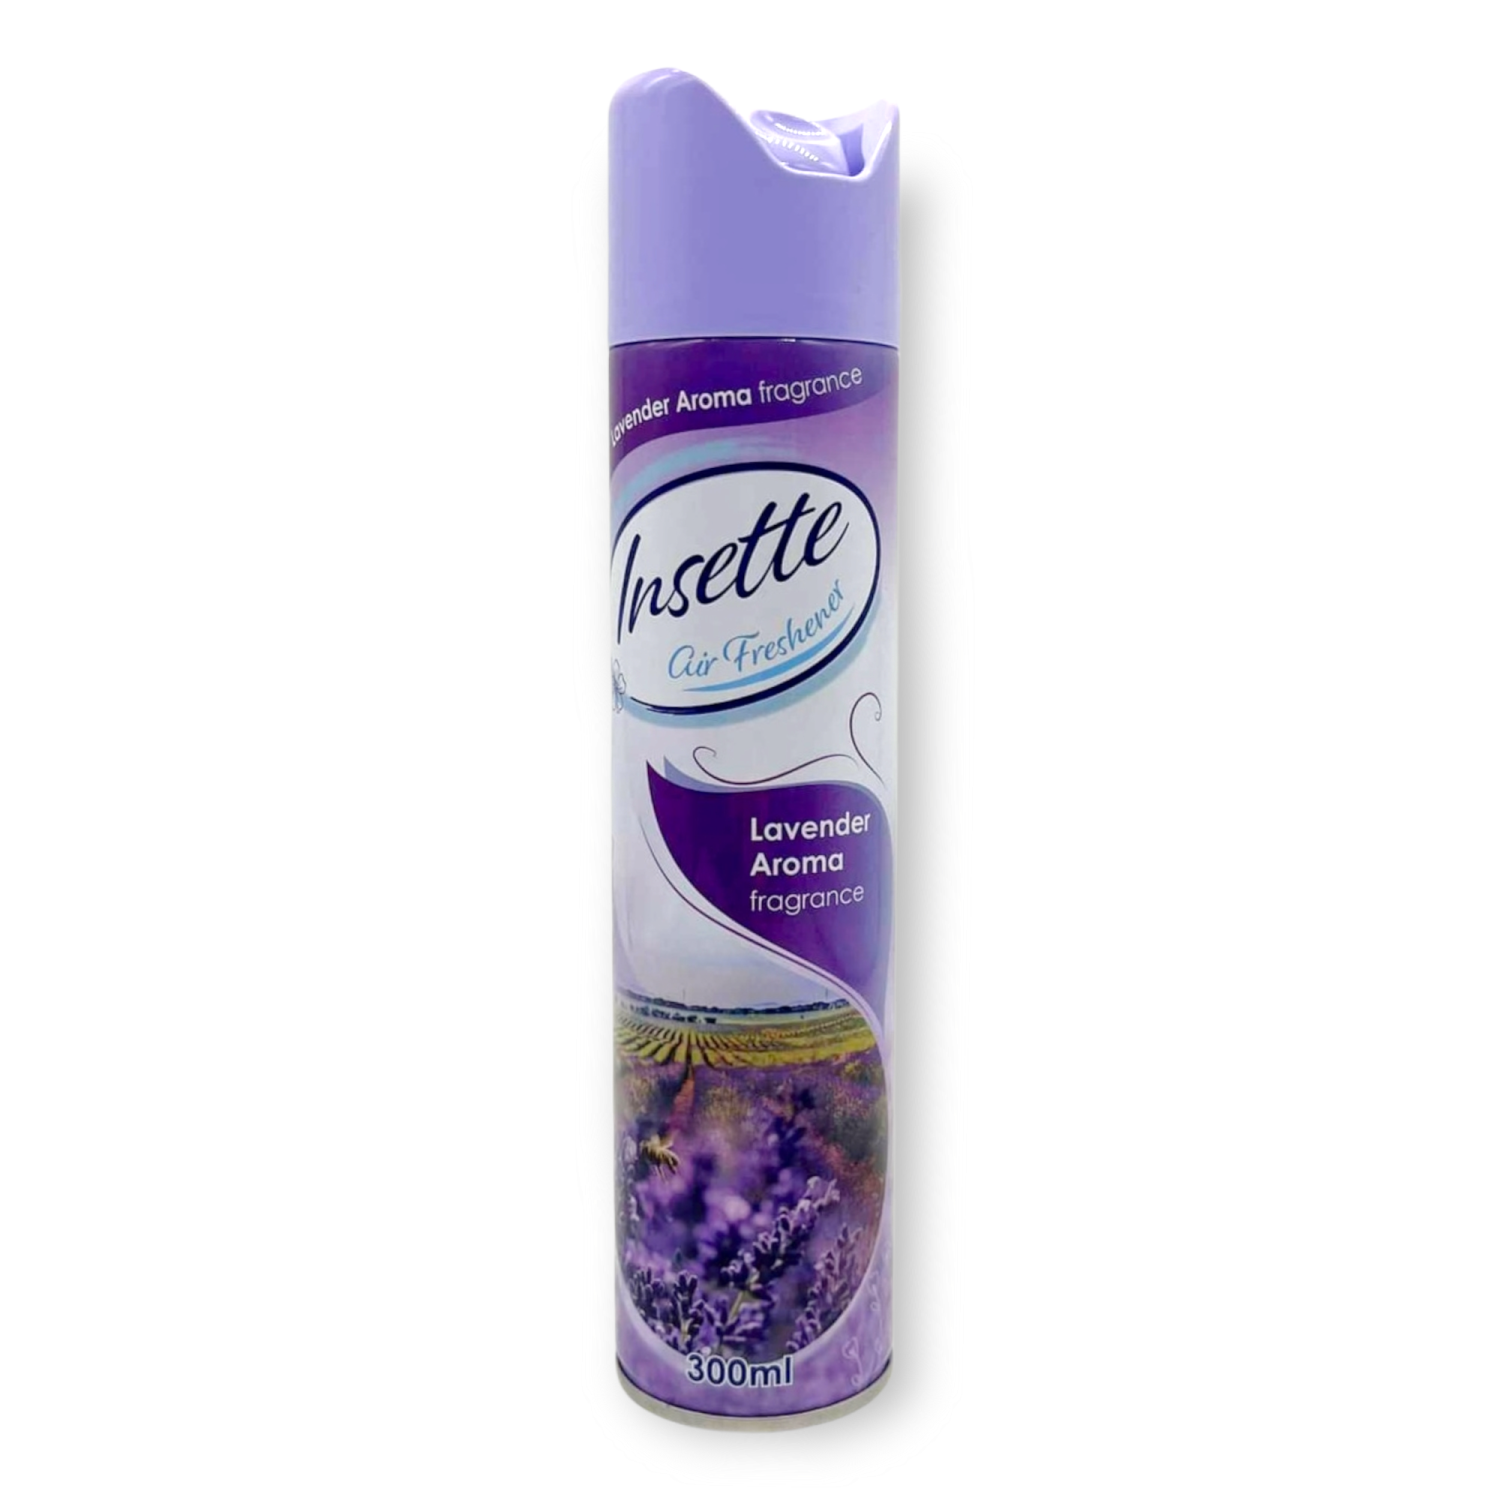 Insette Air Freshener Lavender Aroma 300ml